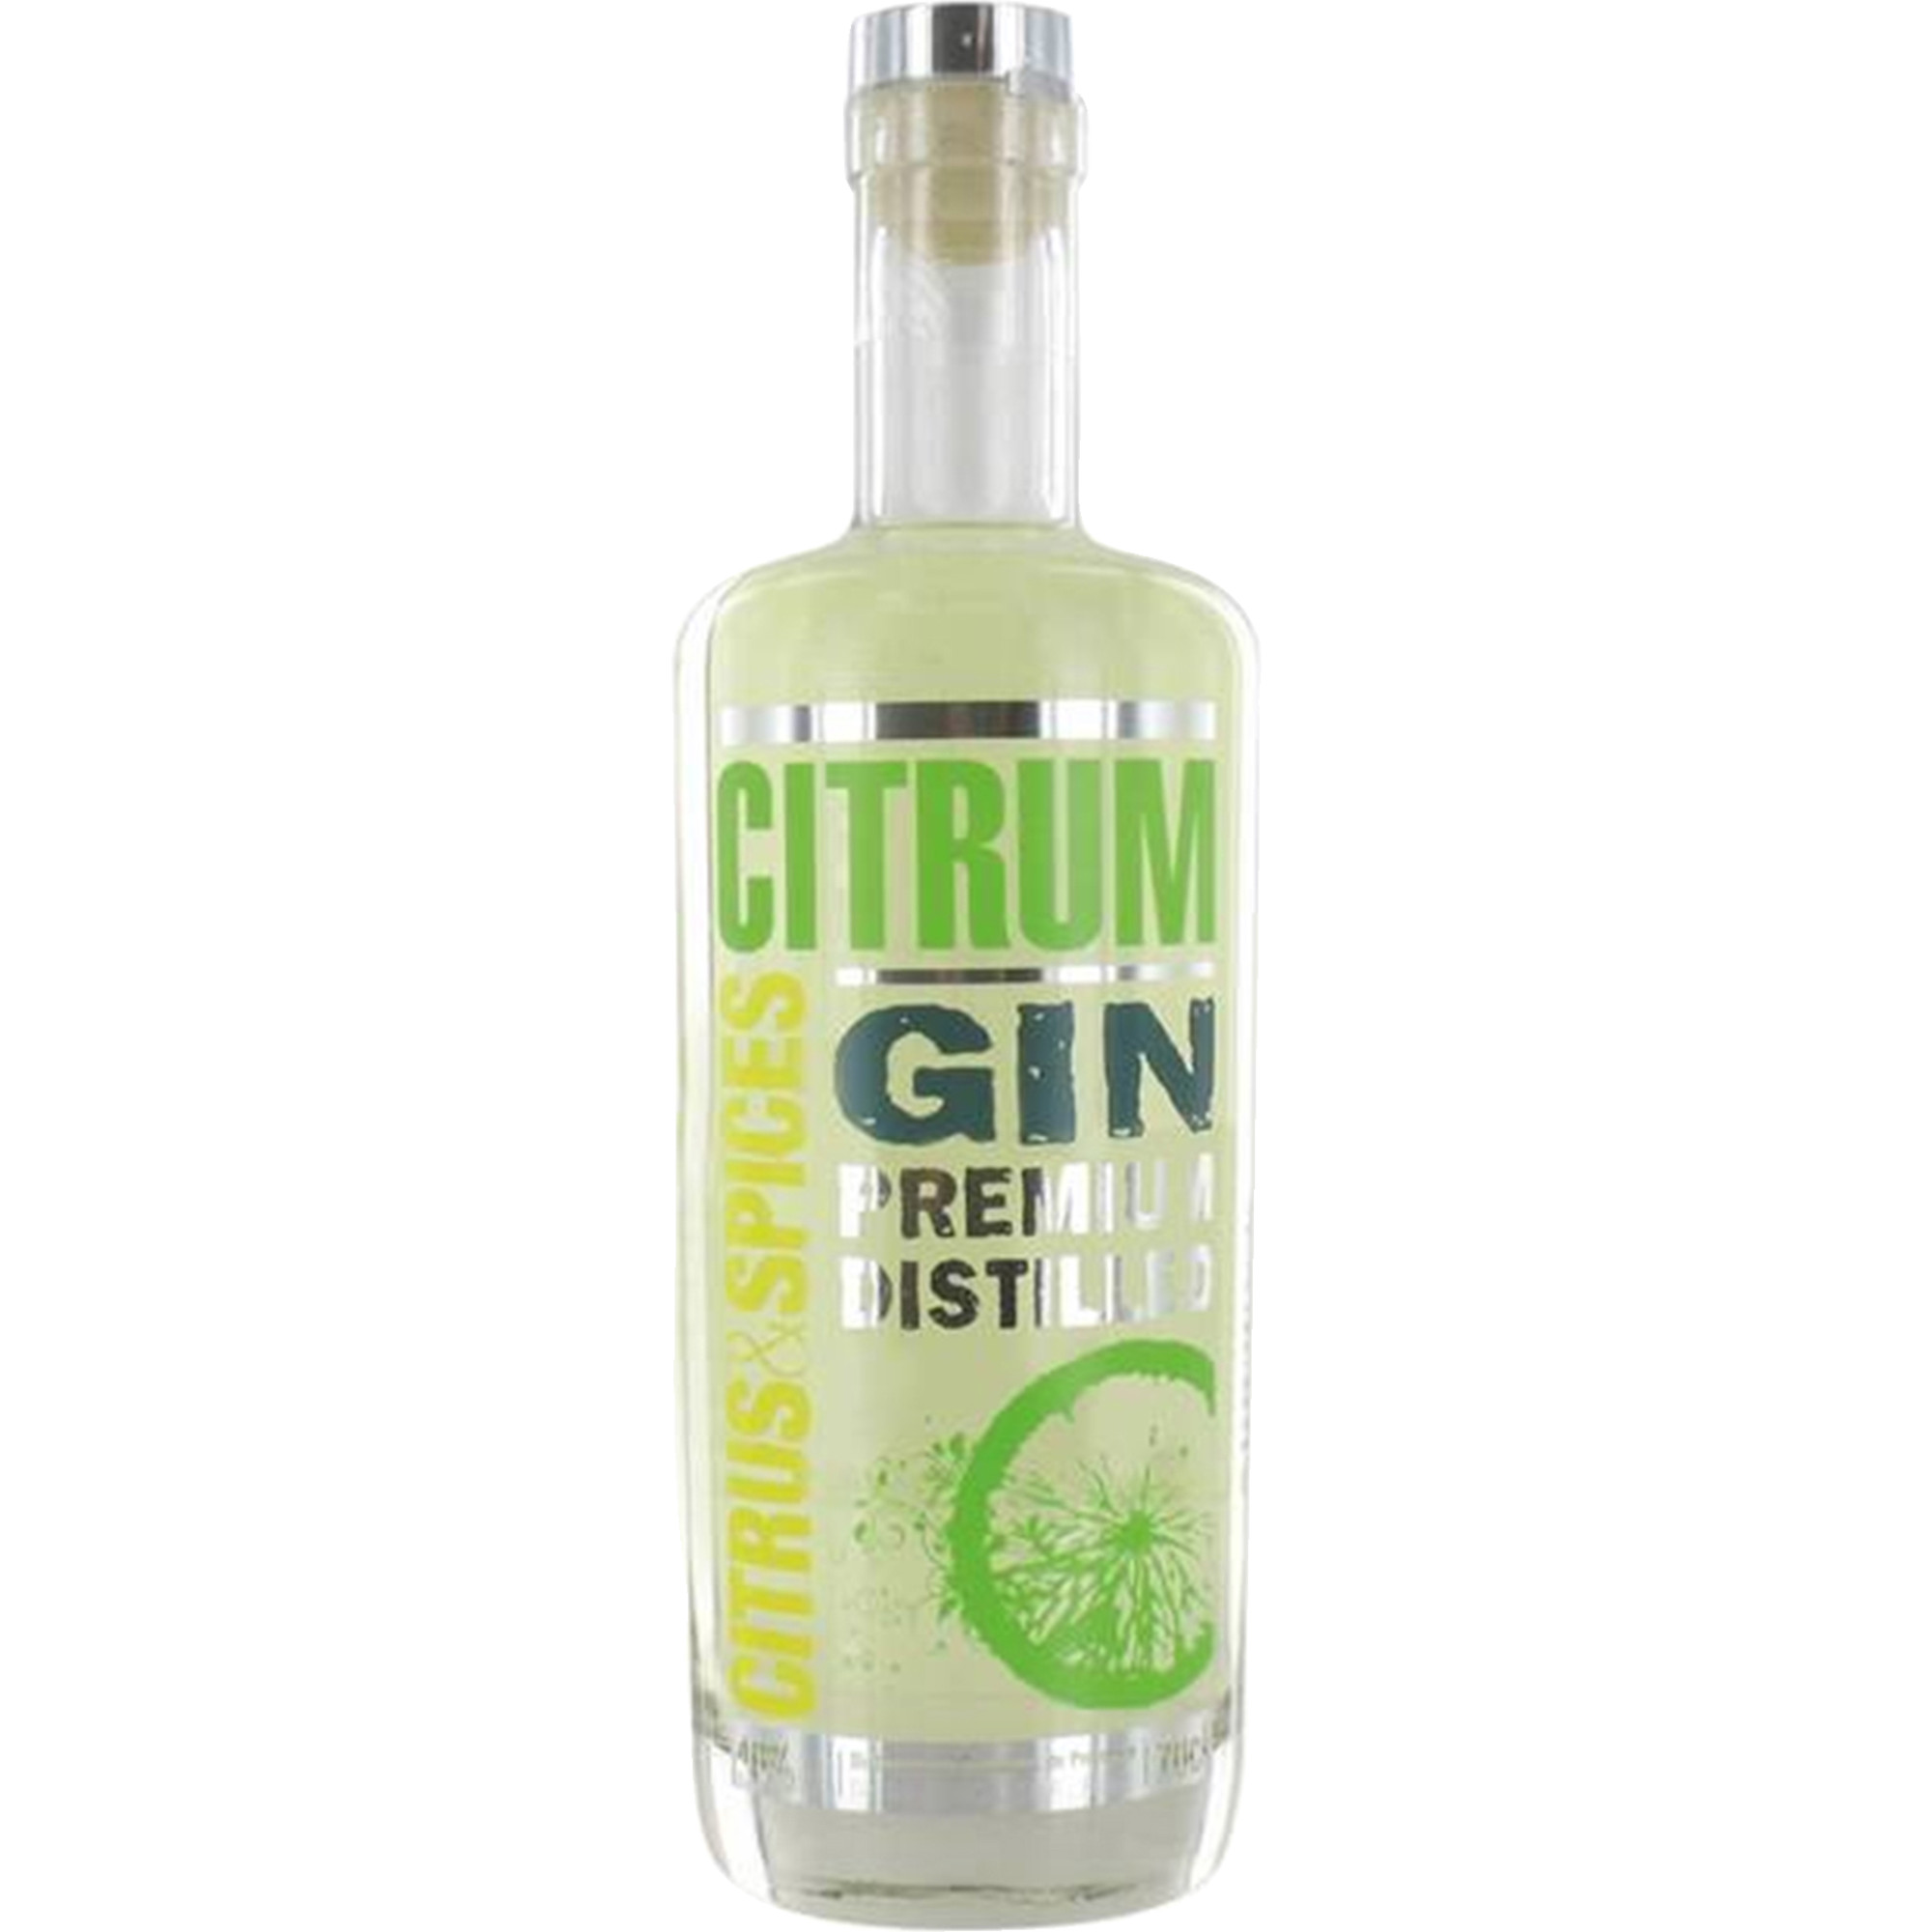 Gin Citrum Premium Distilled, Gin, 40% Vol., 0,7L, Spirituosen  Spirituosen Hawesko